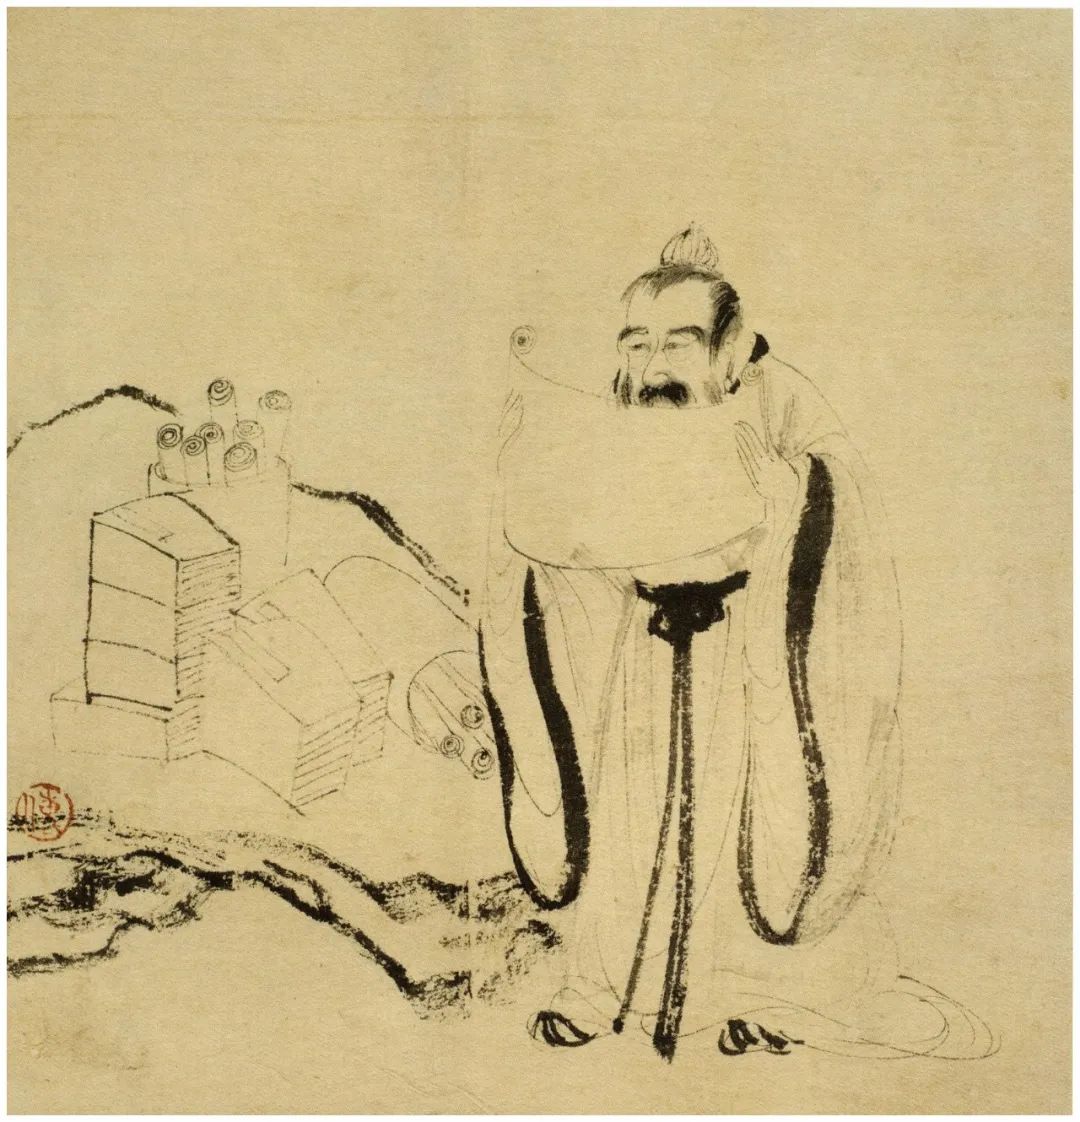 傅抱石画的古代高士们在苍松翠柏间写诗作赋游山玩水，惬意